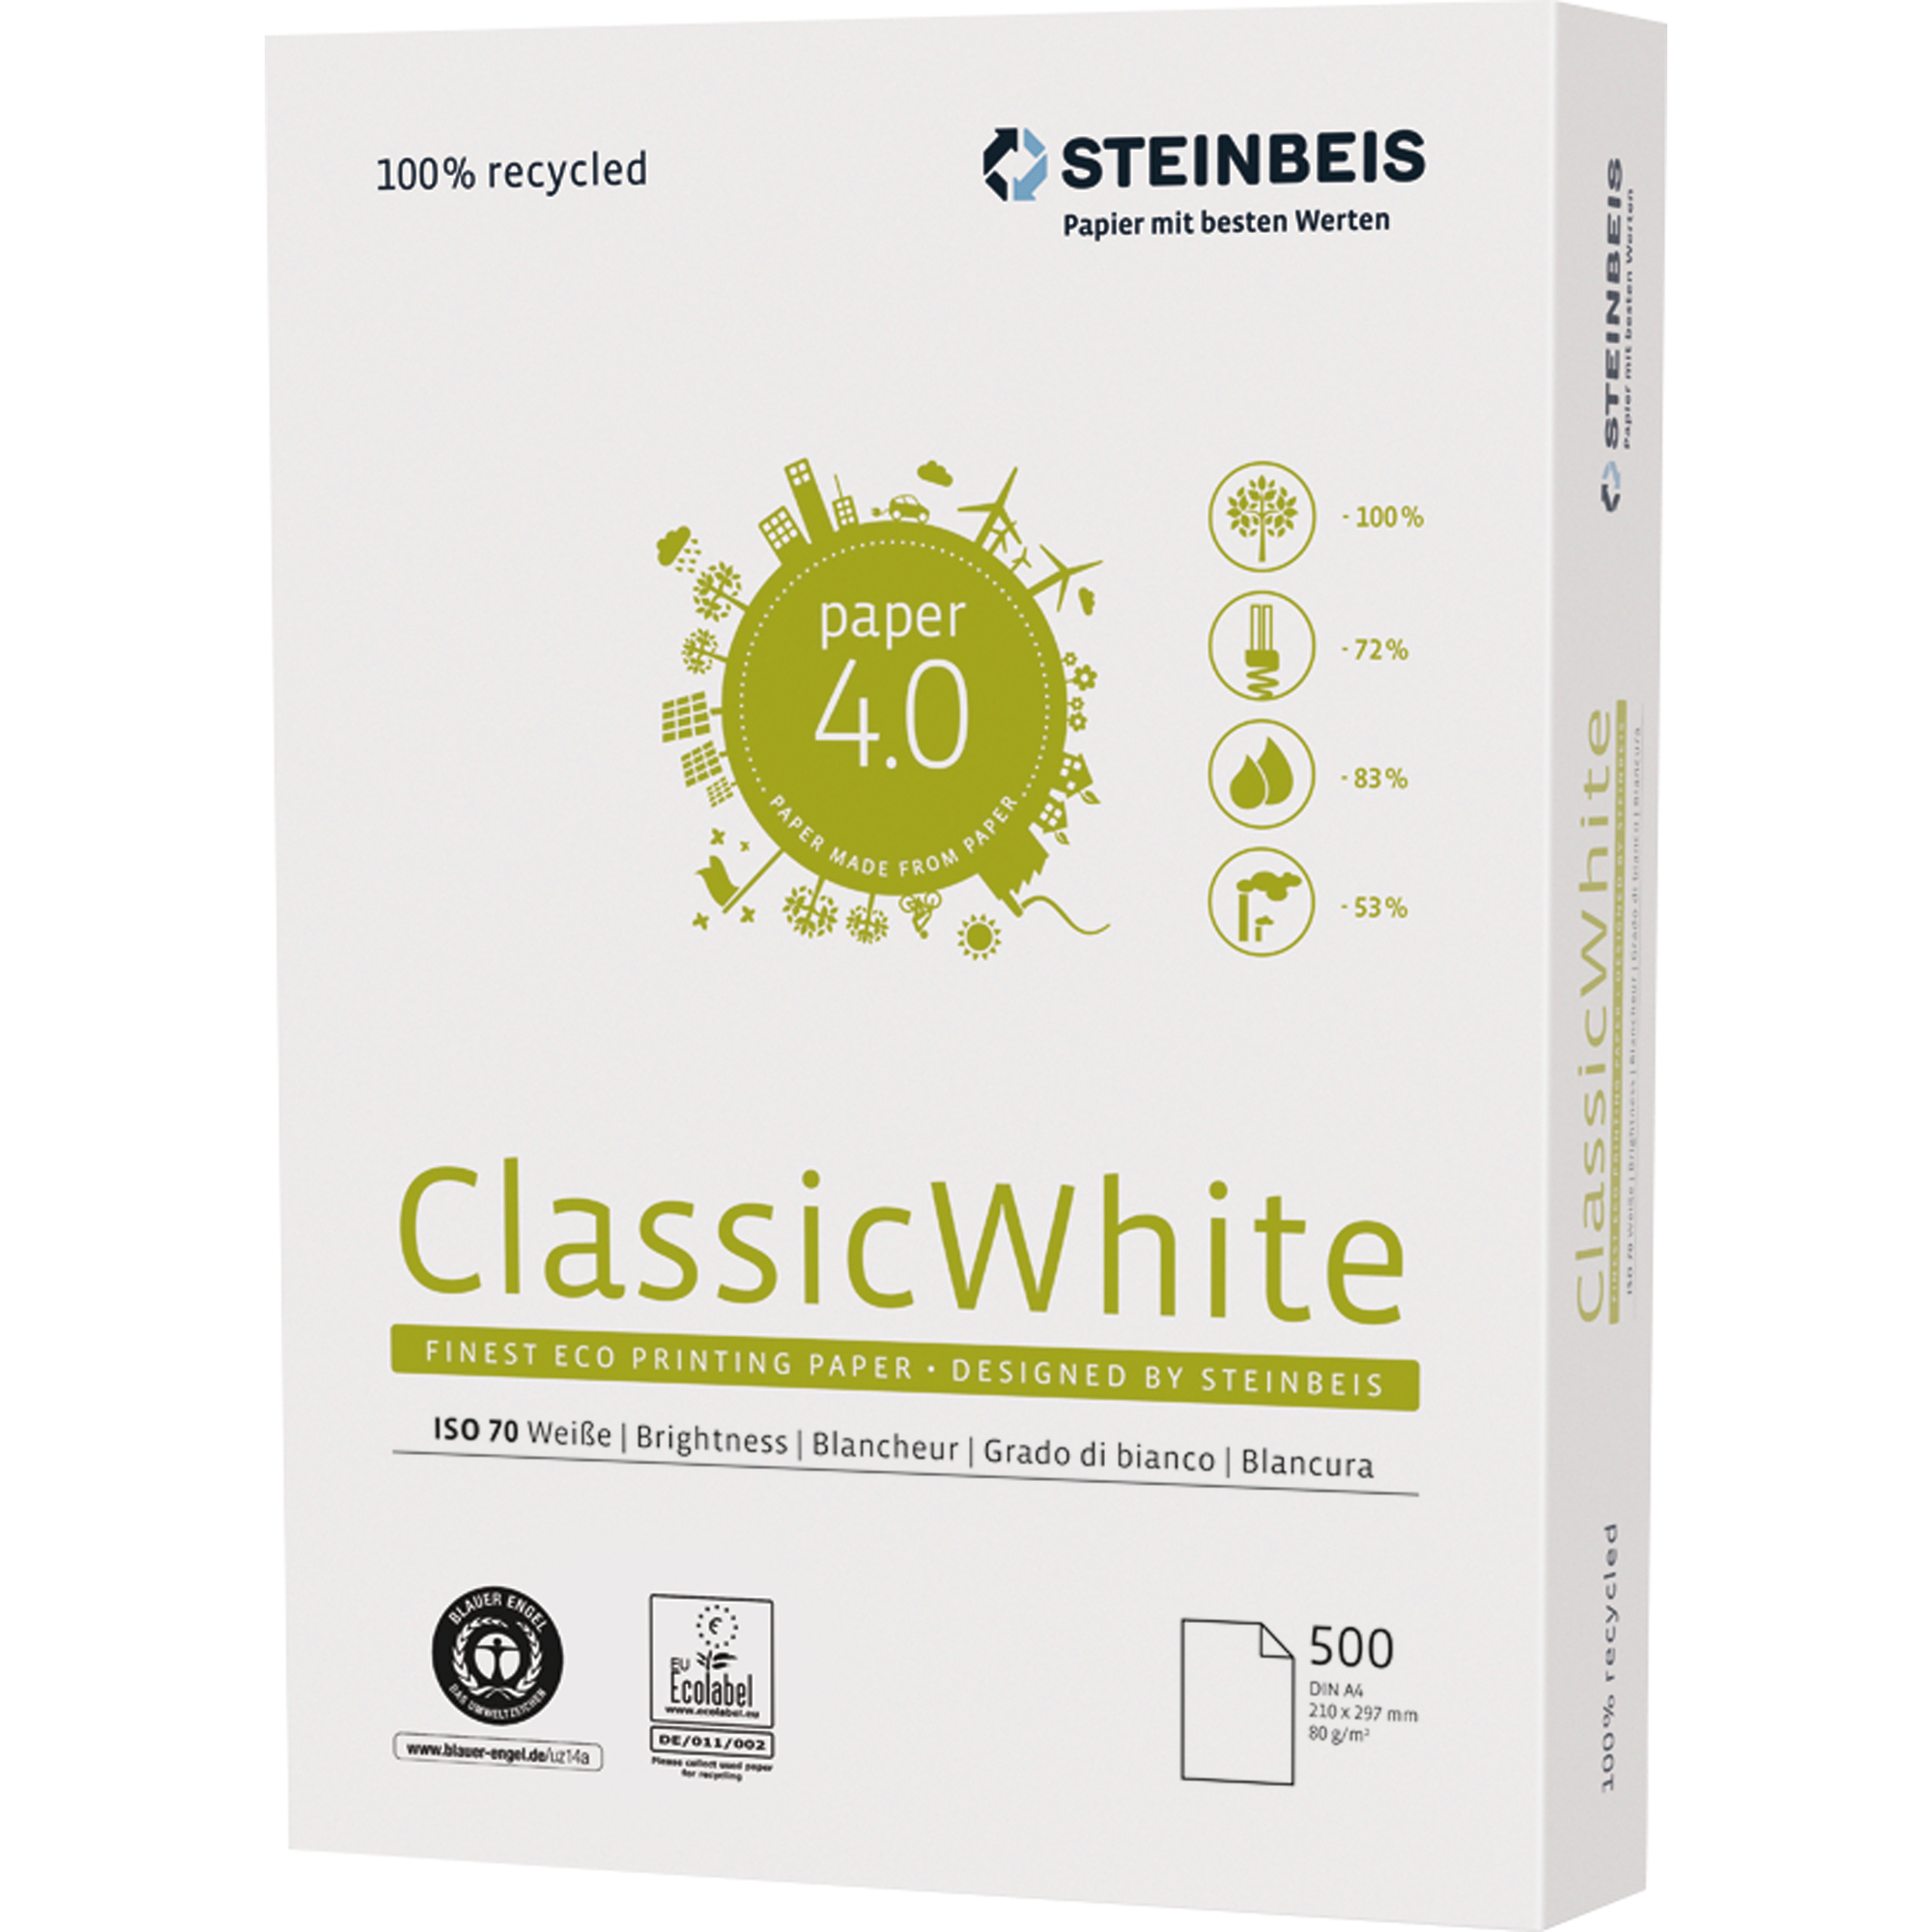 STEINBEIS Kopierpapier ClassicWhite Recycling 500 A4 1 Bl./Pack. Kopierpapier Packung